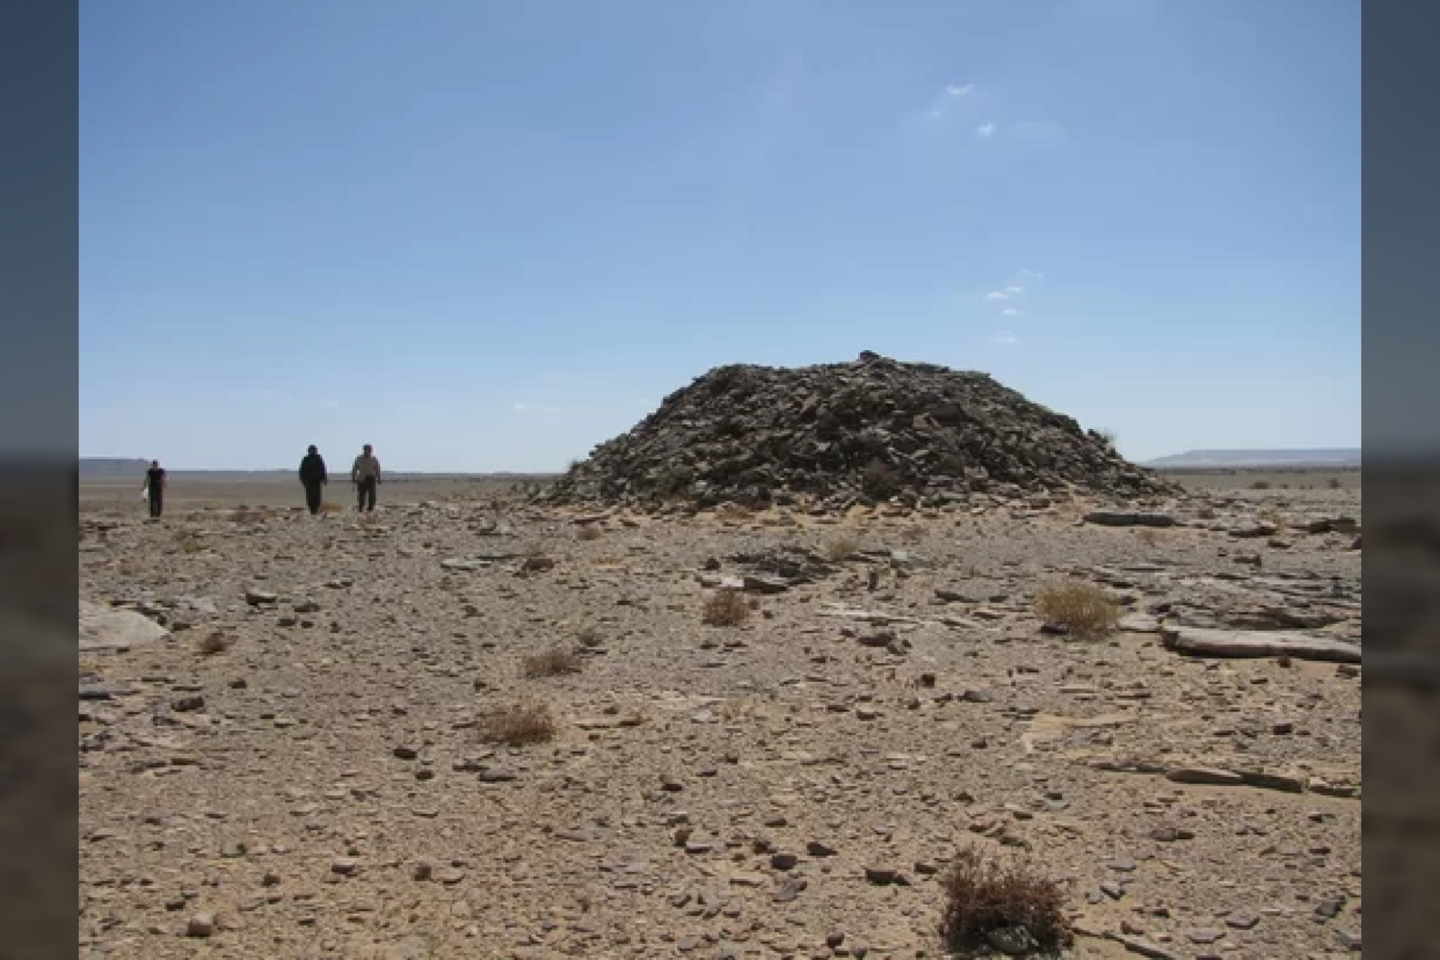 Archeologai šią didelė uolų krūvą vadina „tumulus“. Mokslininkai mano, kad ji buvo naudojama laidojimui.<br> Nicko Brookso ir Joanne Clarke nuotr.